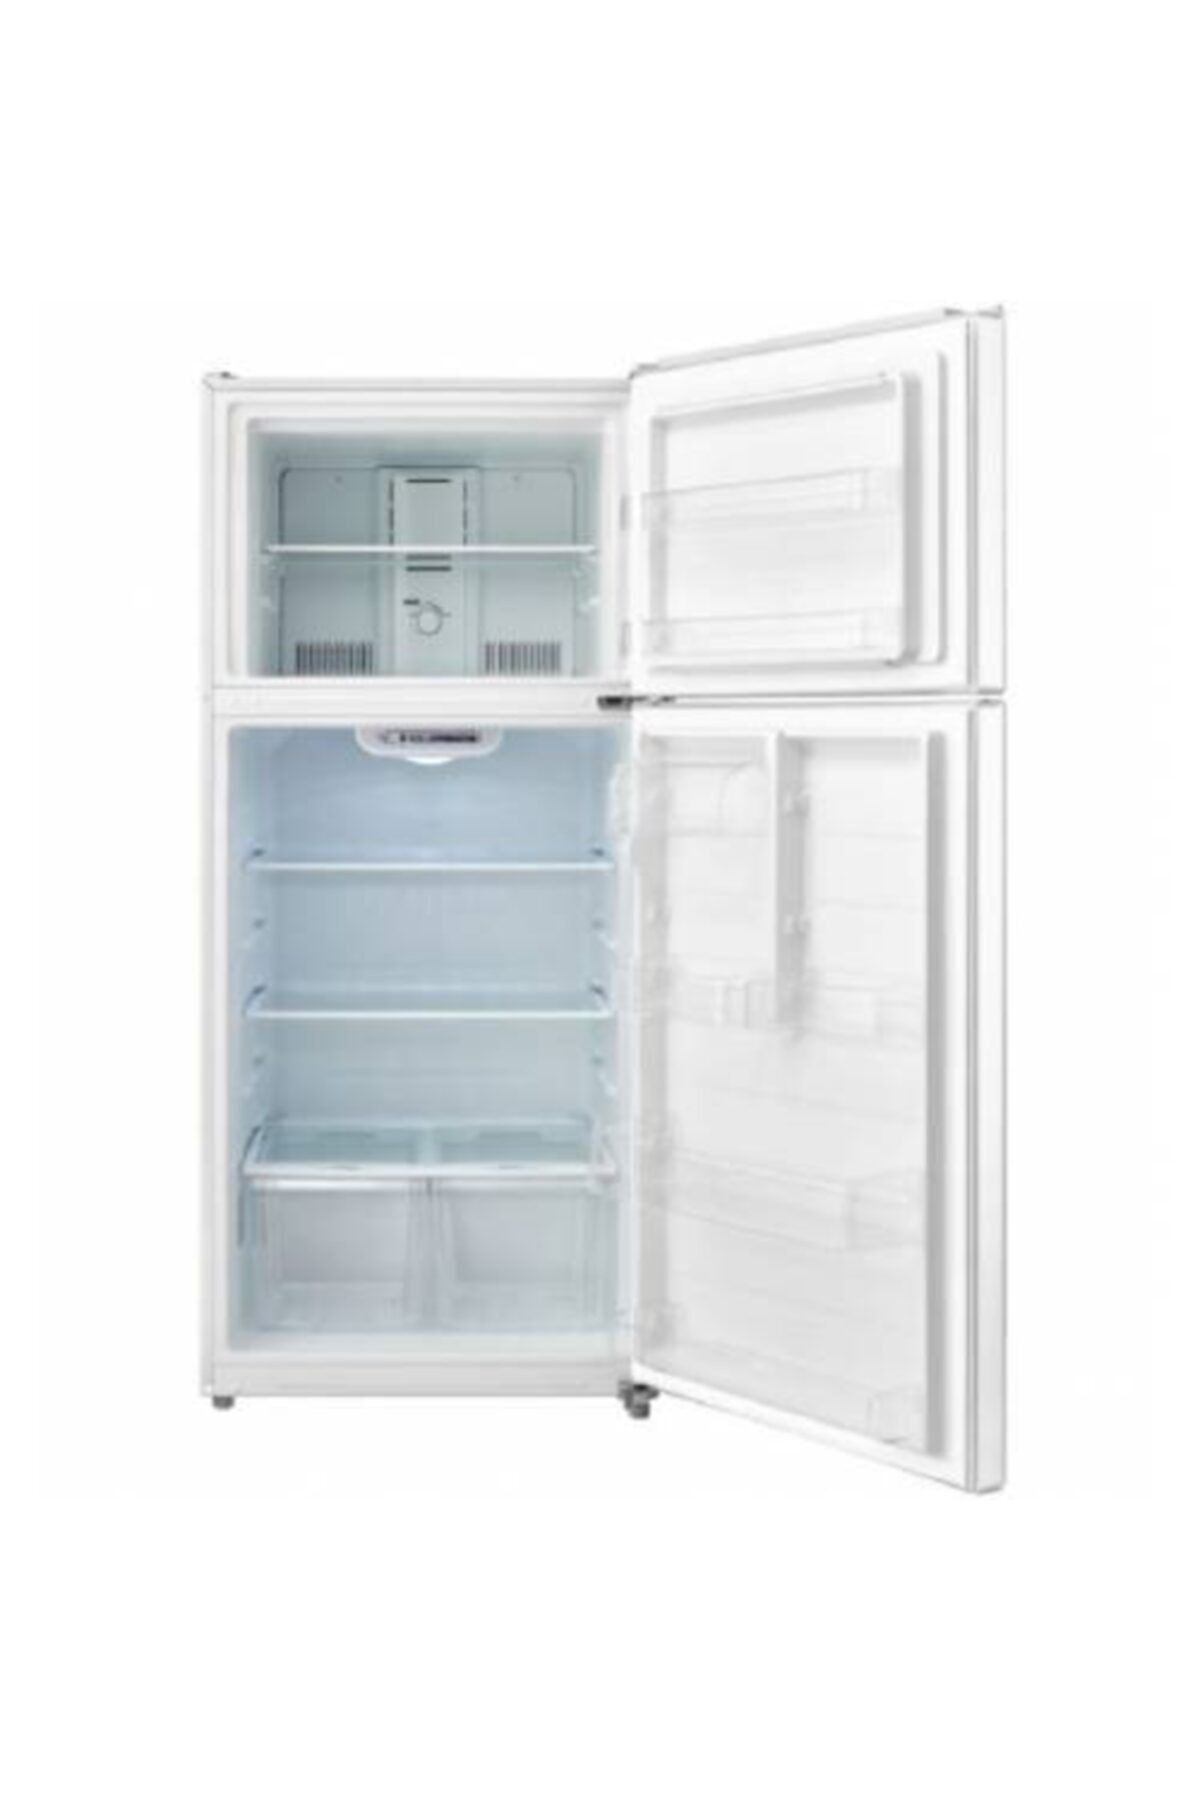 Uğur Ues 535 D2k Nf A+ Beyaz Buzdolabı, Soğutucu